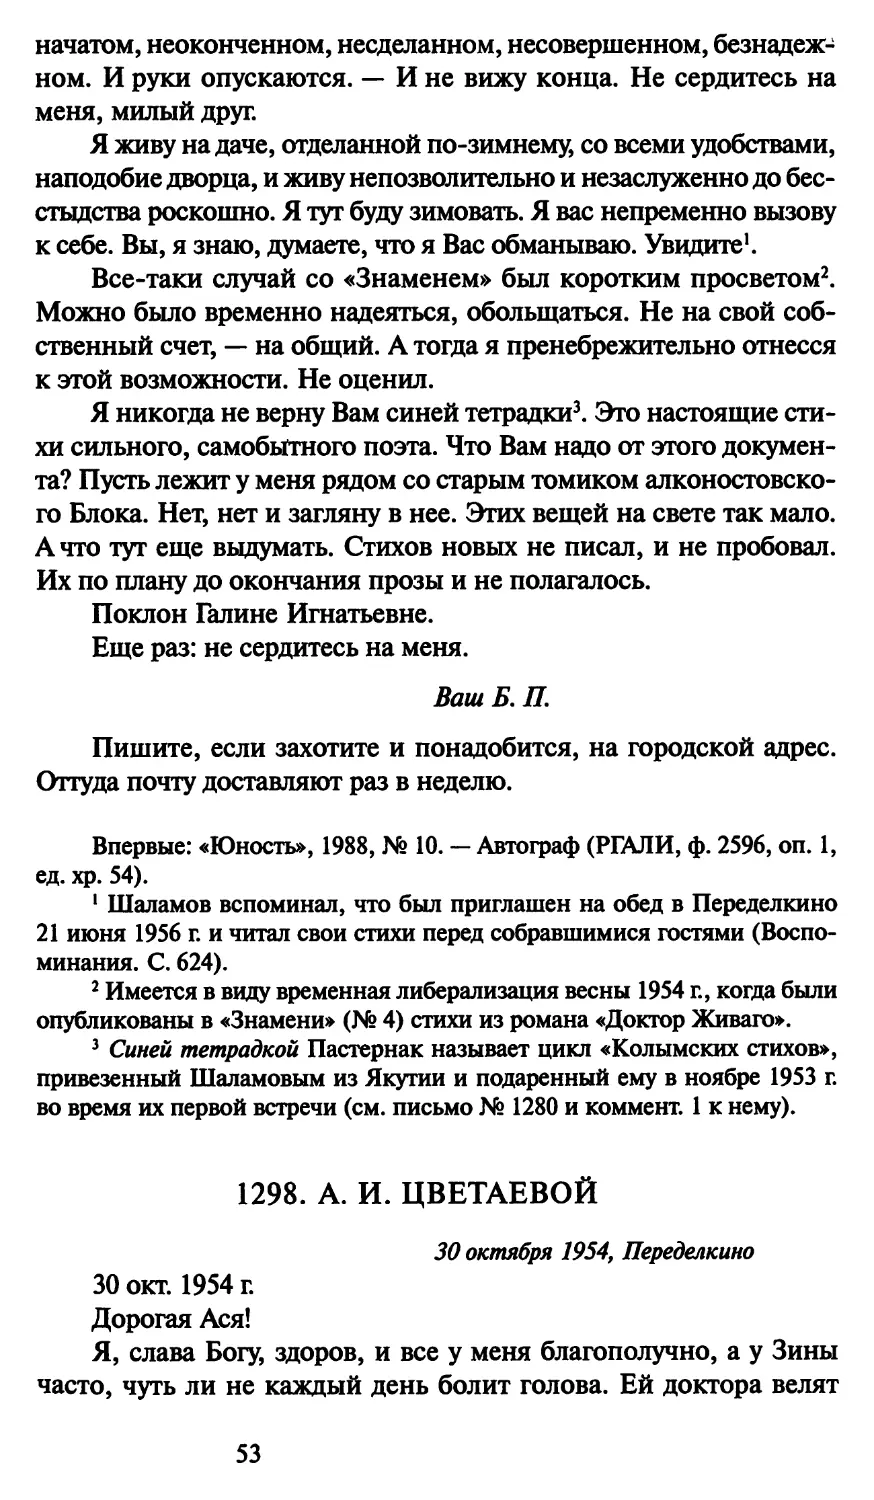 1298. А. И. Цветаевой 30 октября 1954